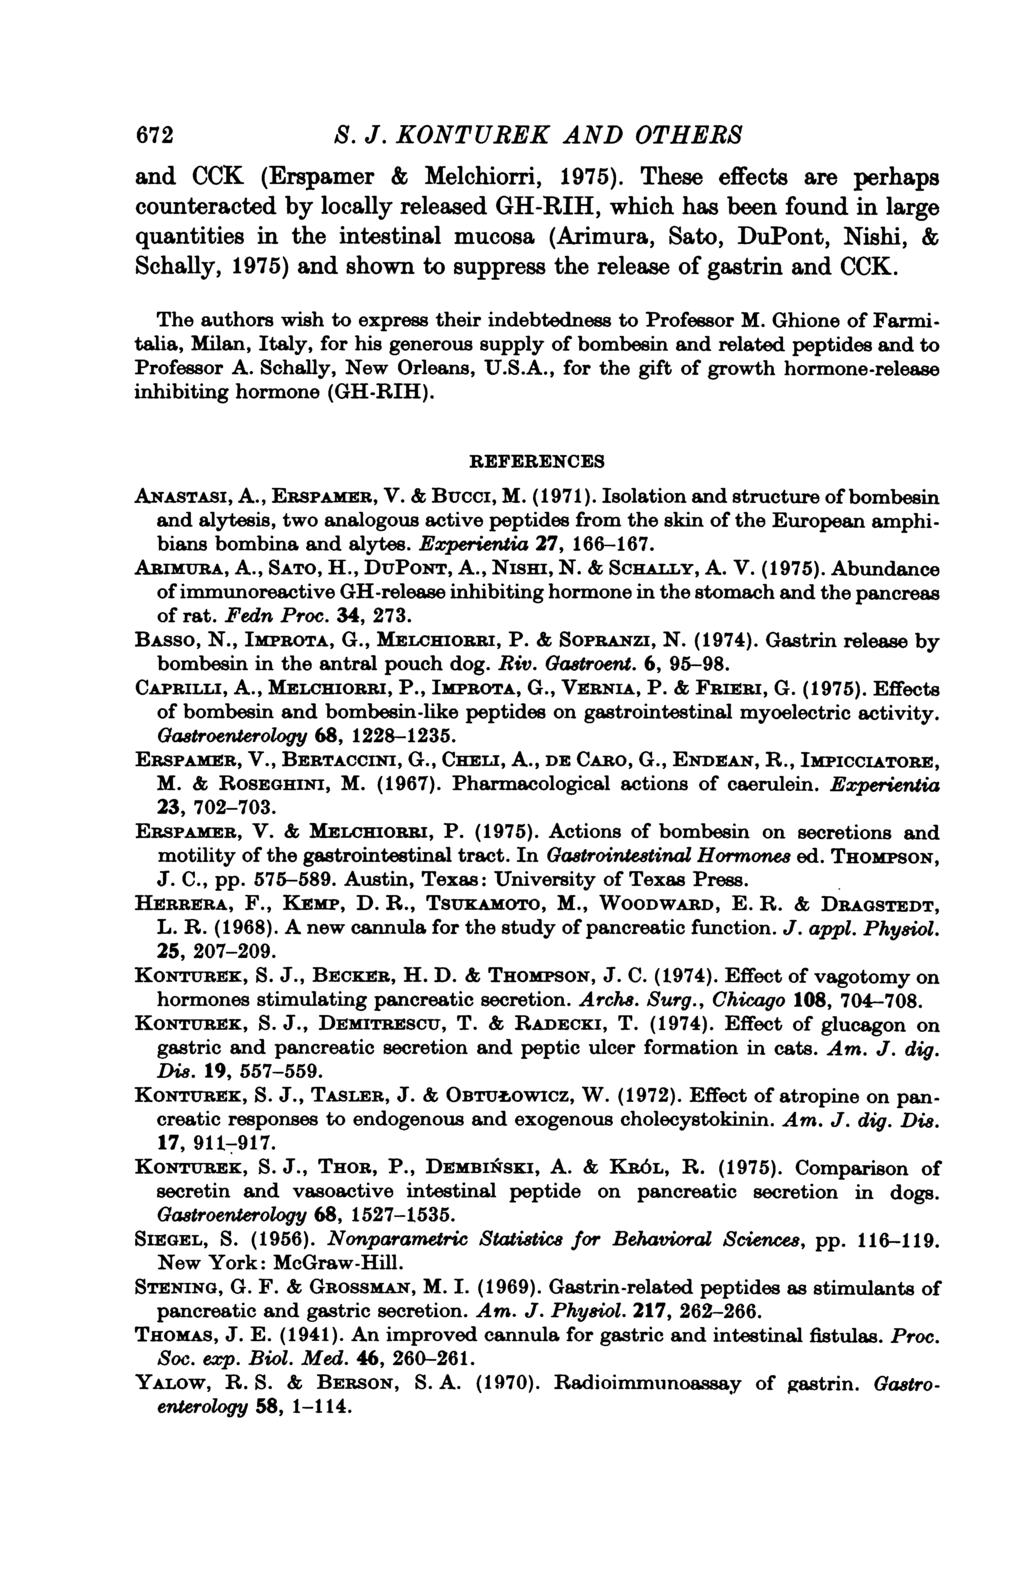 672 S. J. KONTUREK AND OTHERS and CCK (Erspamer & Melchiorri, 1975).